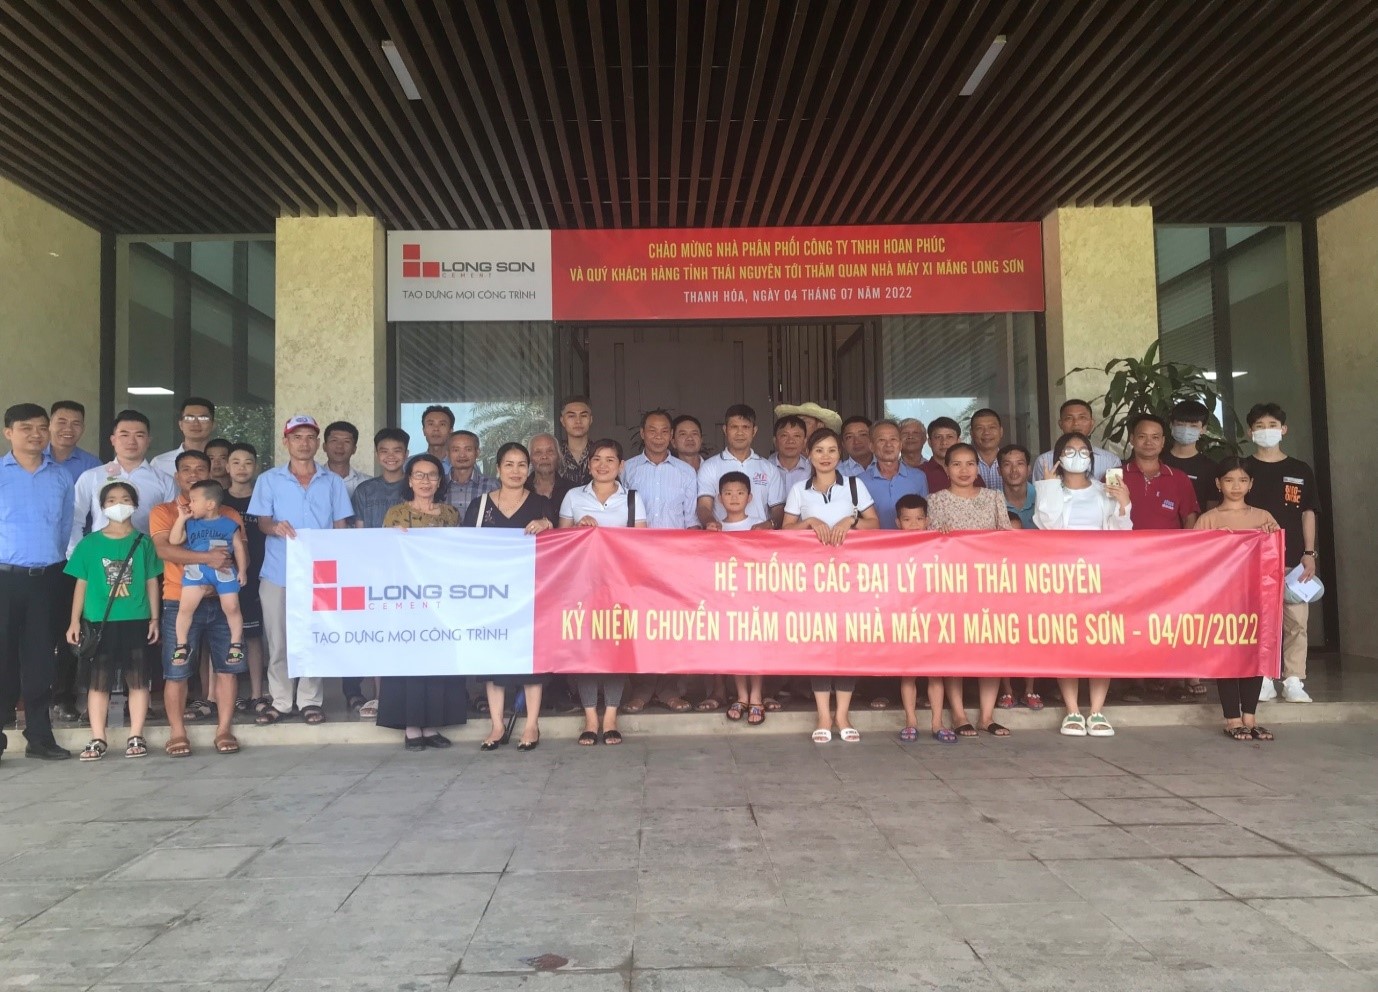 Chào mừng Nhà phân phối Công ty TNHH Hoan Phúc và Quý khách hàng tỉnh Thái Nguyên tới thăm quan Nhà máy xi măng Long Sơn